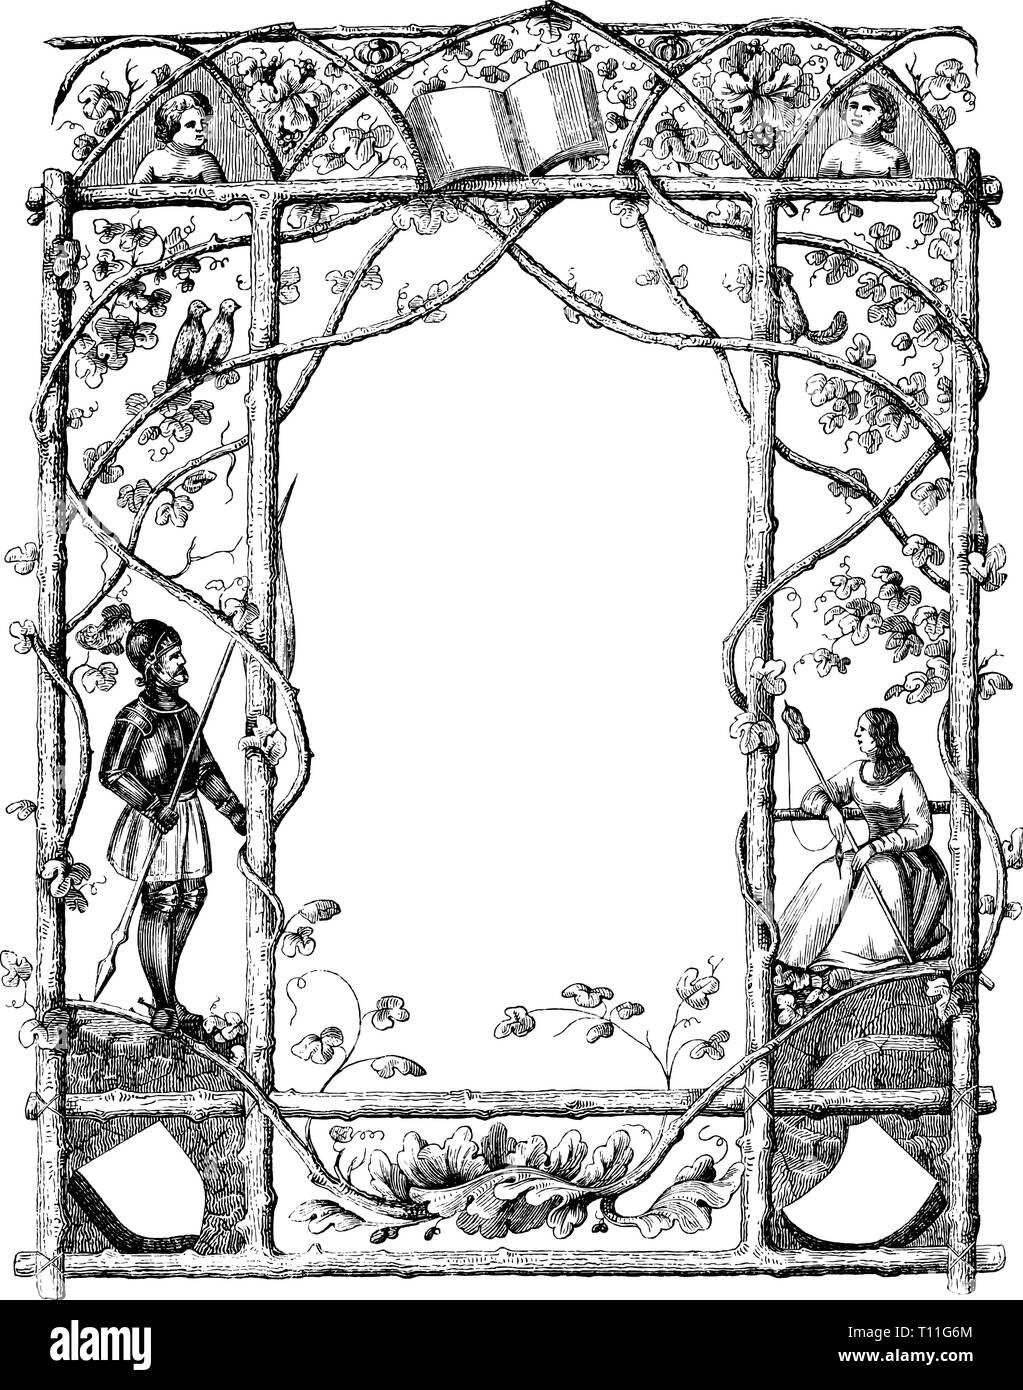 Antique Vintage dessin ou gravure d'ornate frame avec thème naturel et avec Knight et de la femme. Prague Messenger 1846. Auteur non défini. Illustration de Vecteur